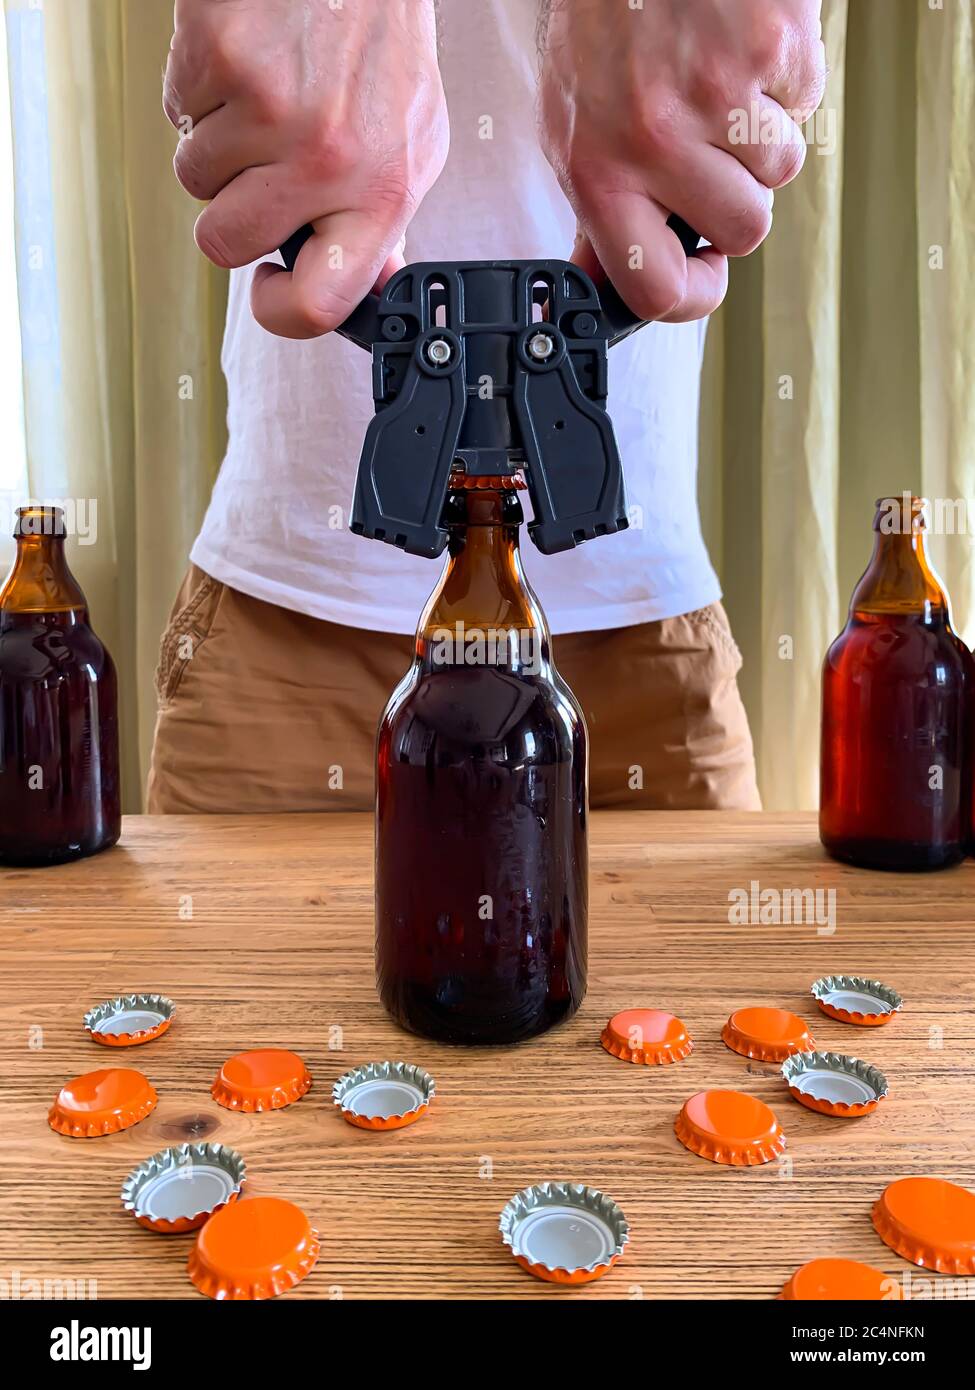 Cerveza artesanal en casa, el hombre cierra botellas de cerveza de vidrio  marrón con tapón de plástico en la mesa de madera con tapas de corona  naranja. Imagen vertical Fotografía de stock -